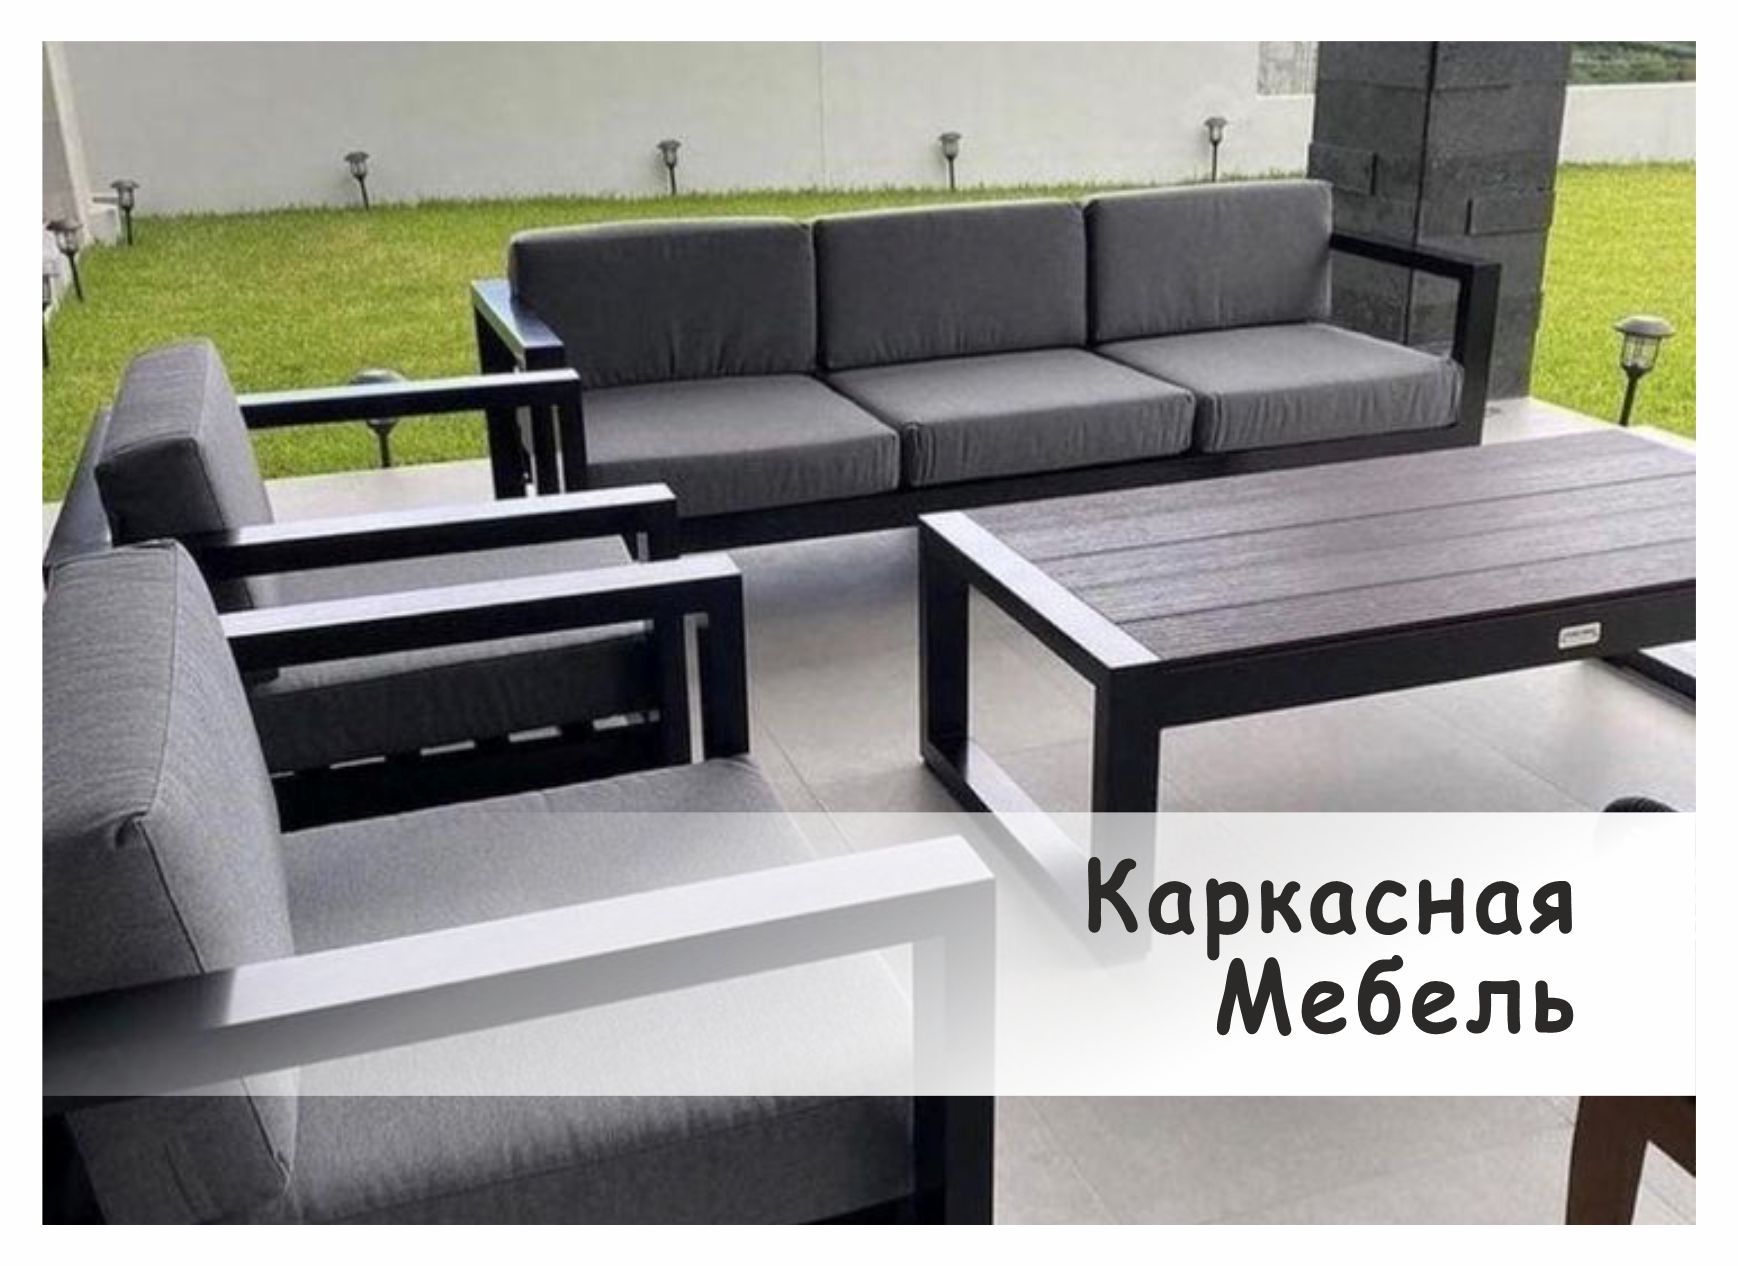 Мебель от Каркасыча